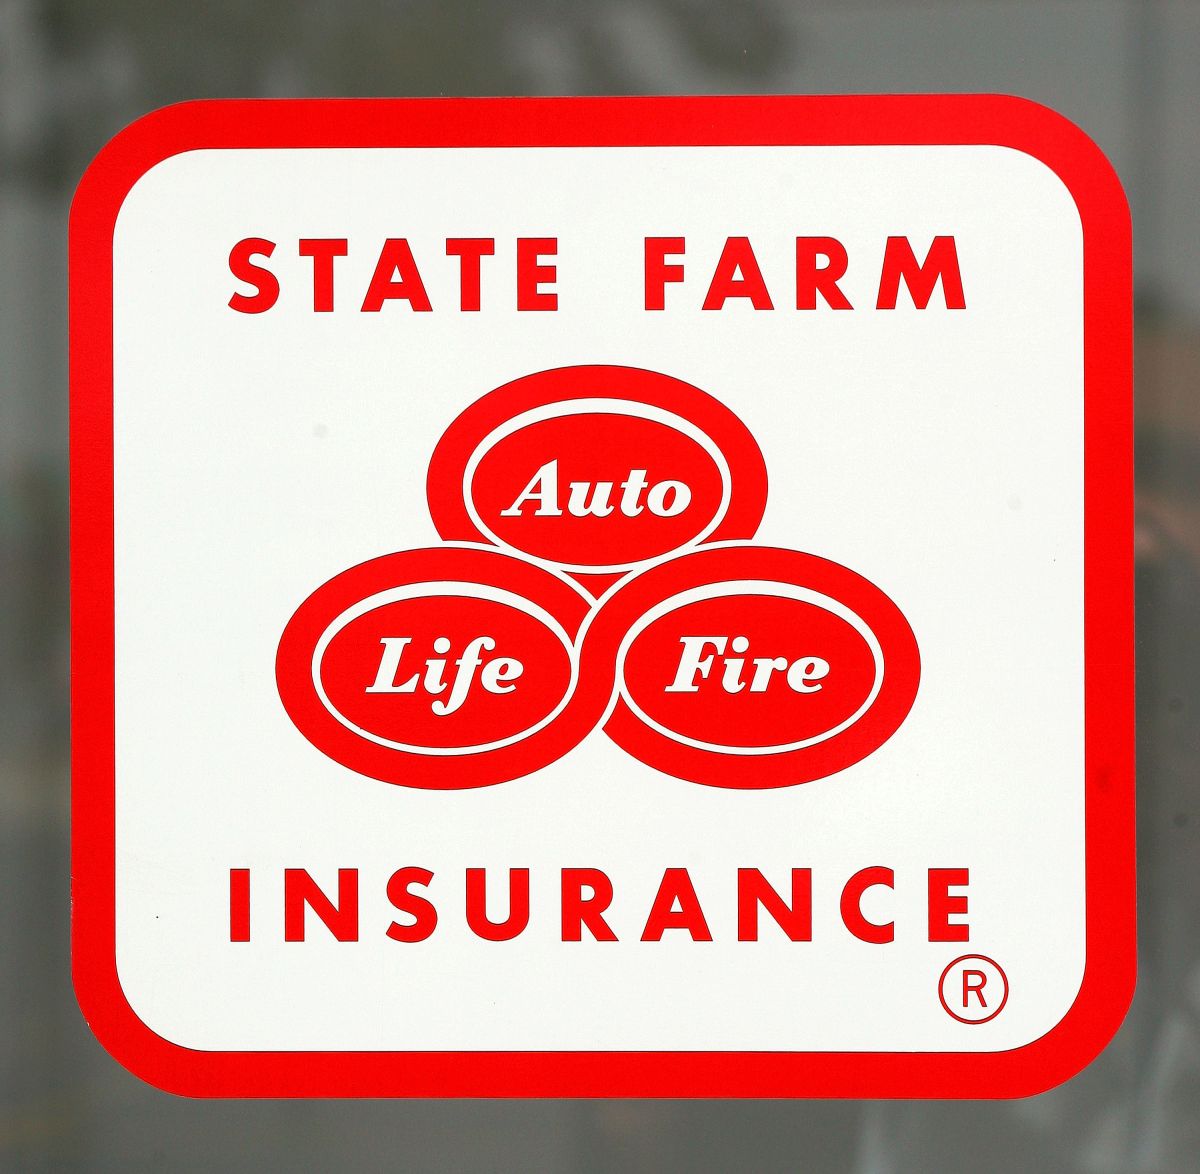 La firma de seguros State Farm fue denunciada por discriminación.